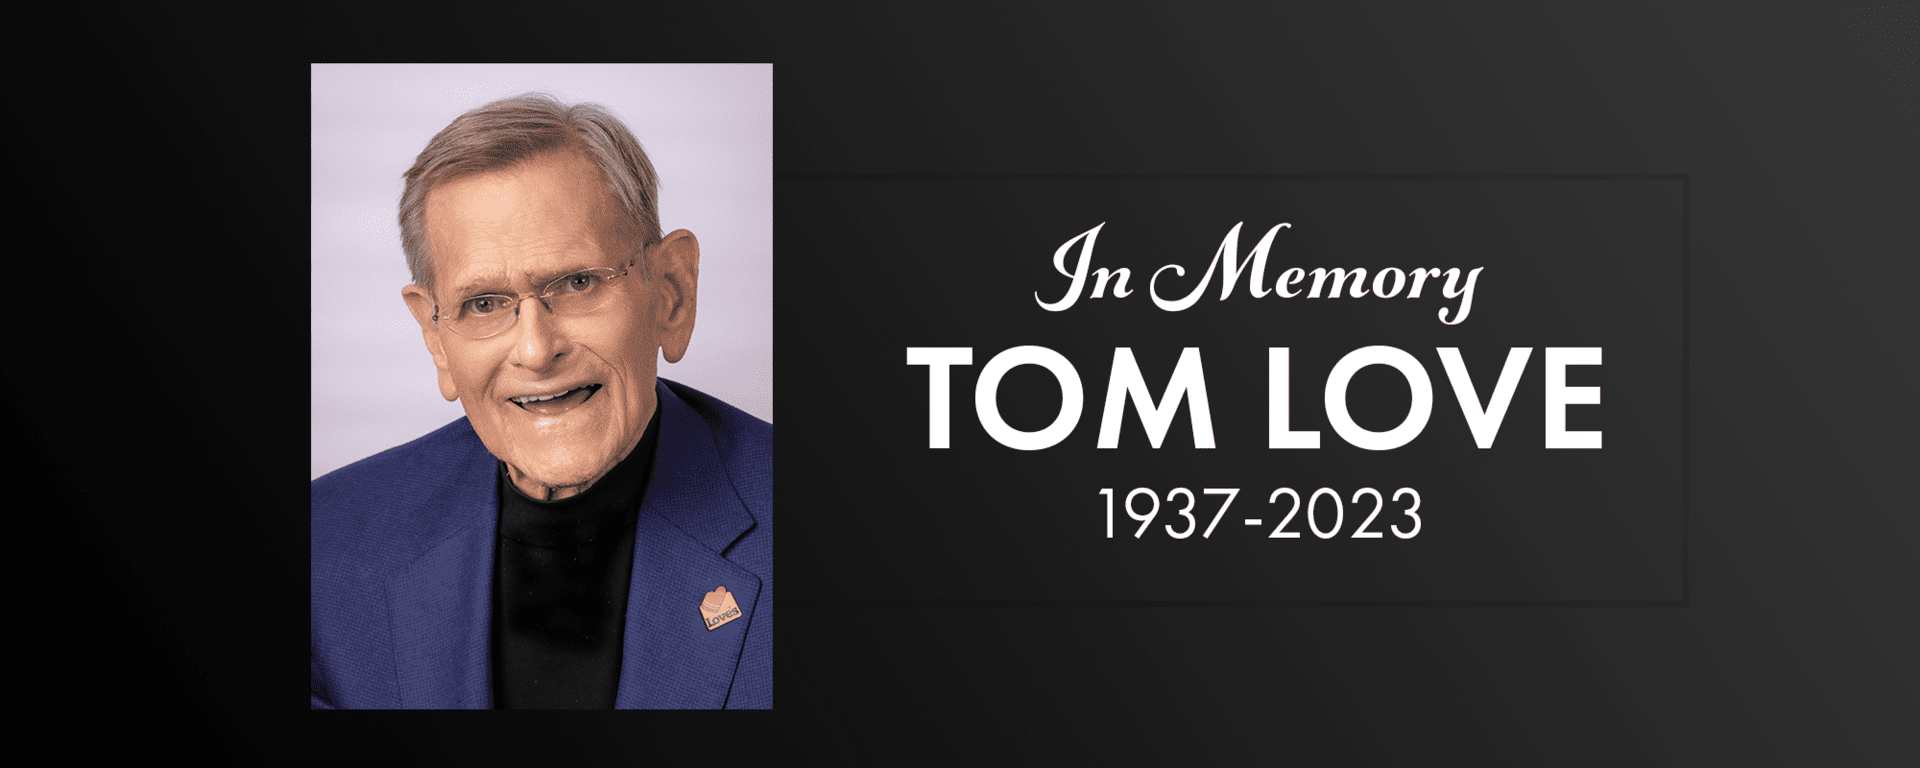 In memory of tom love